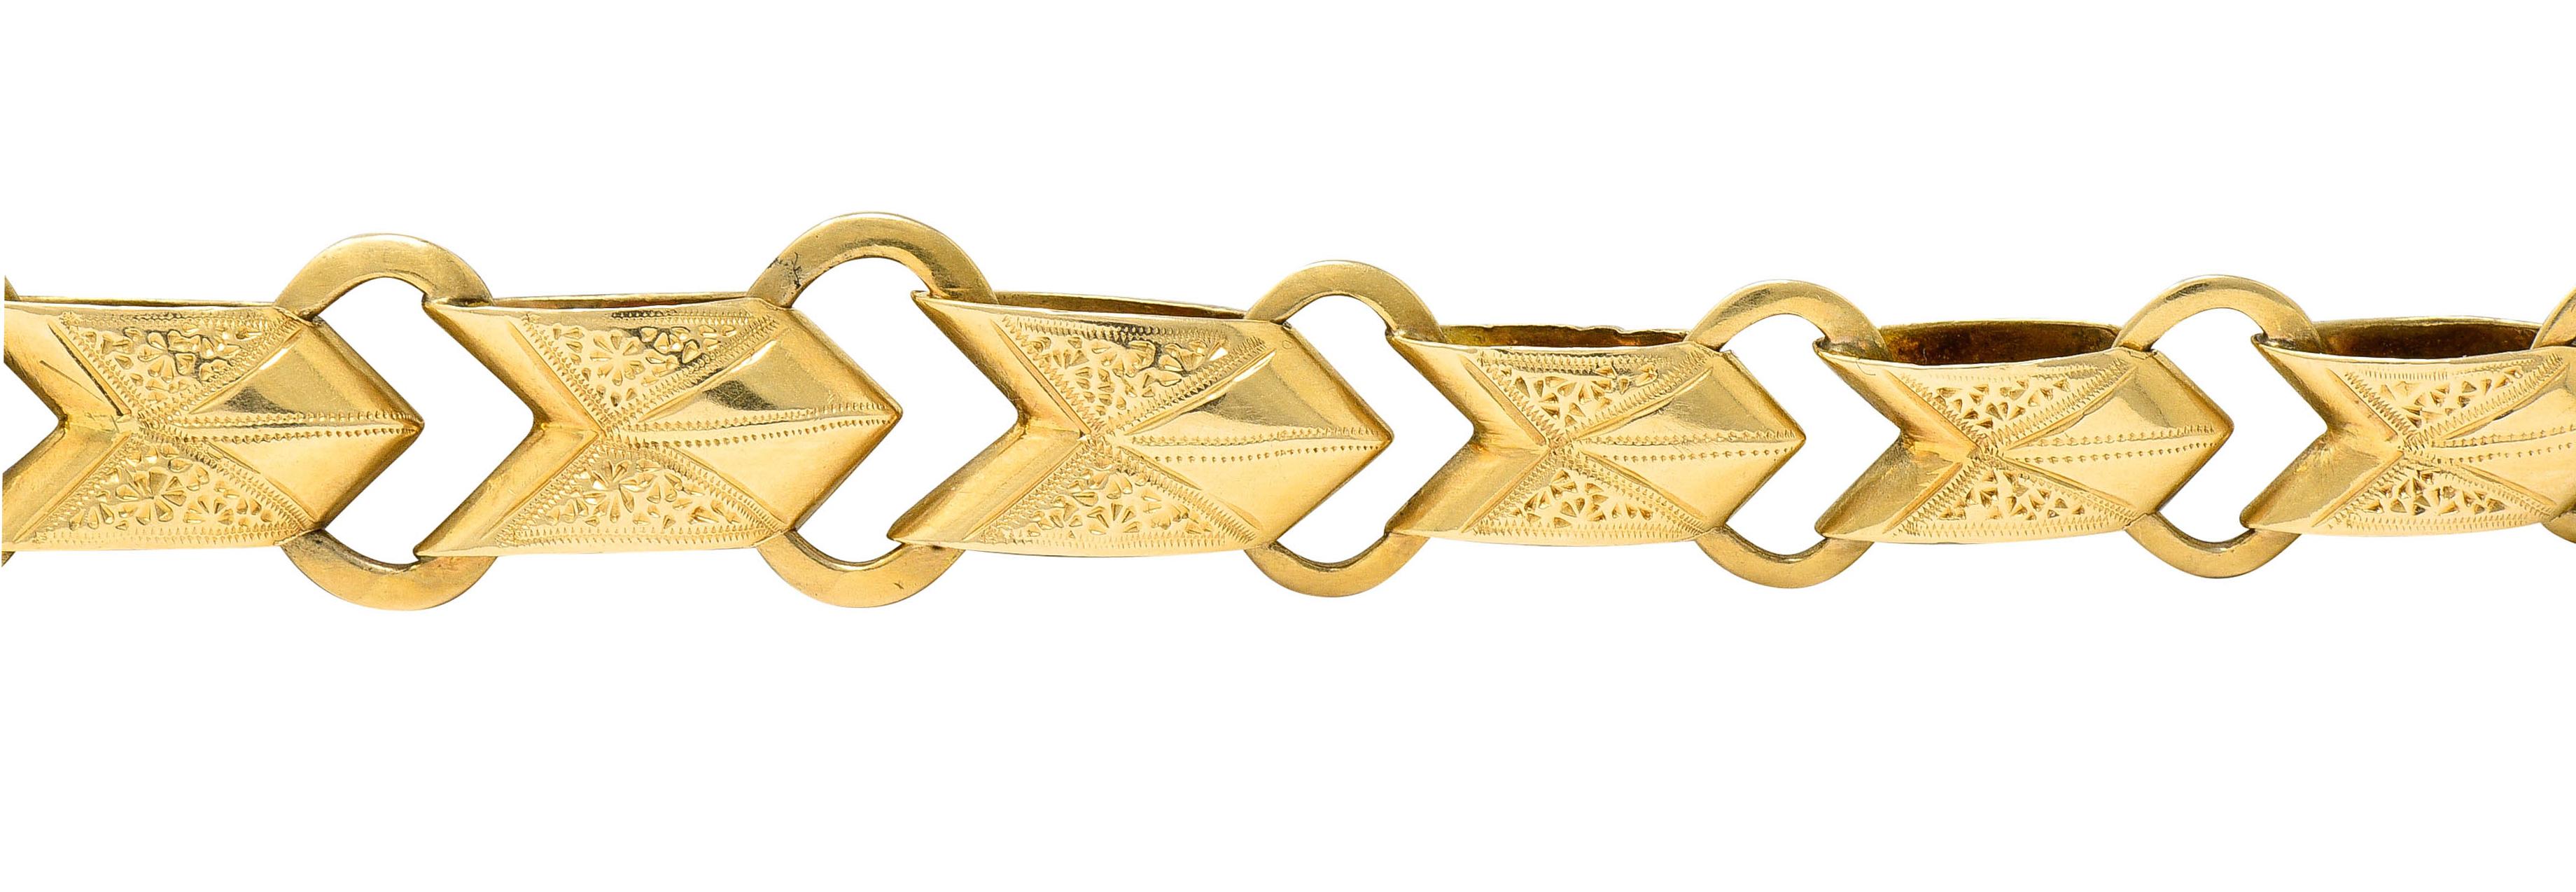 1900 Victorian 14 Karat Gold Linked Watch Chain Bracelet 1